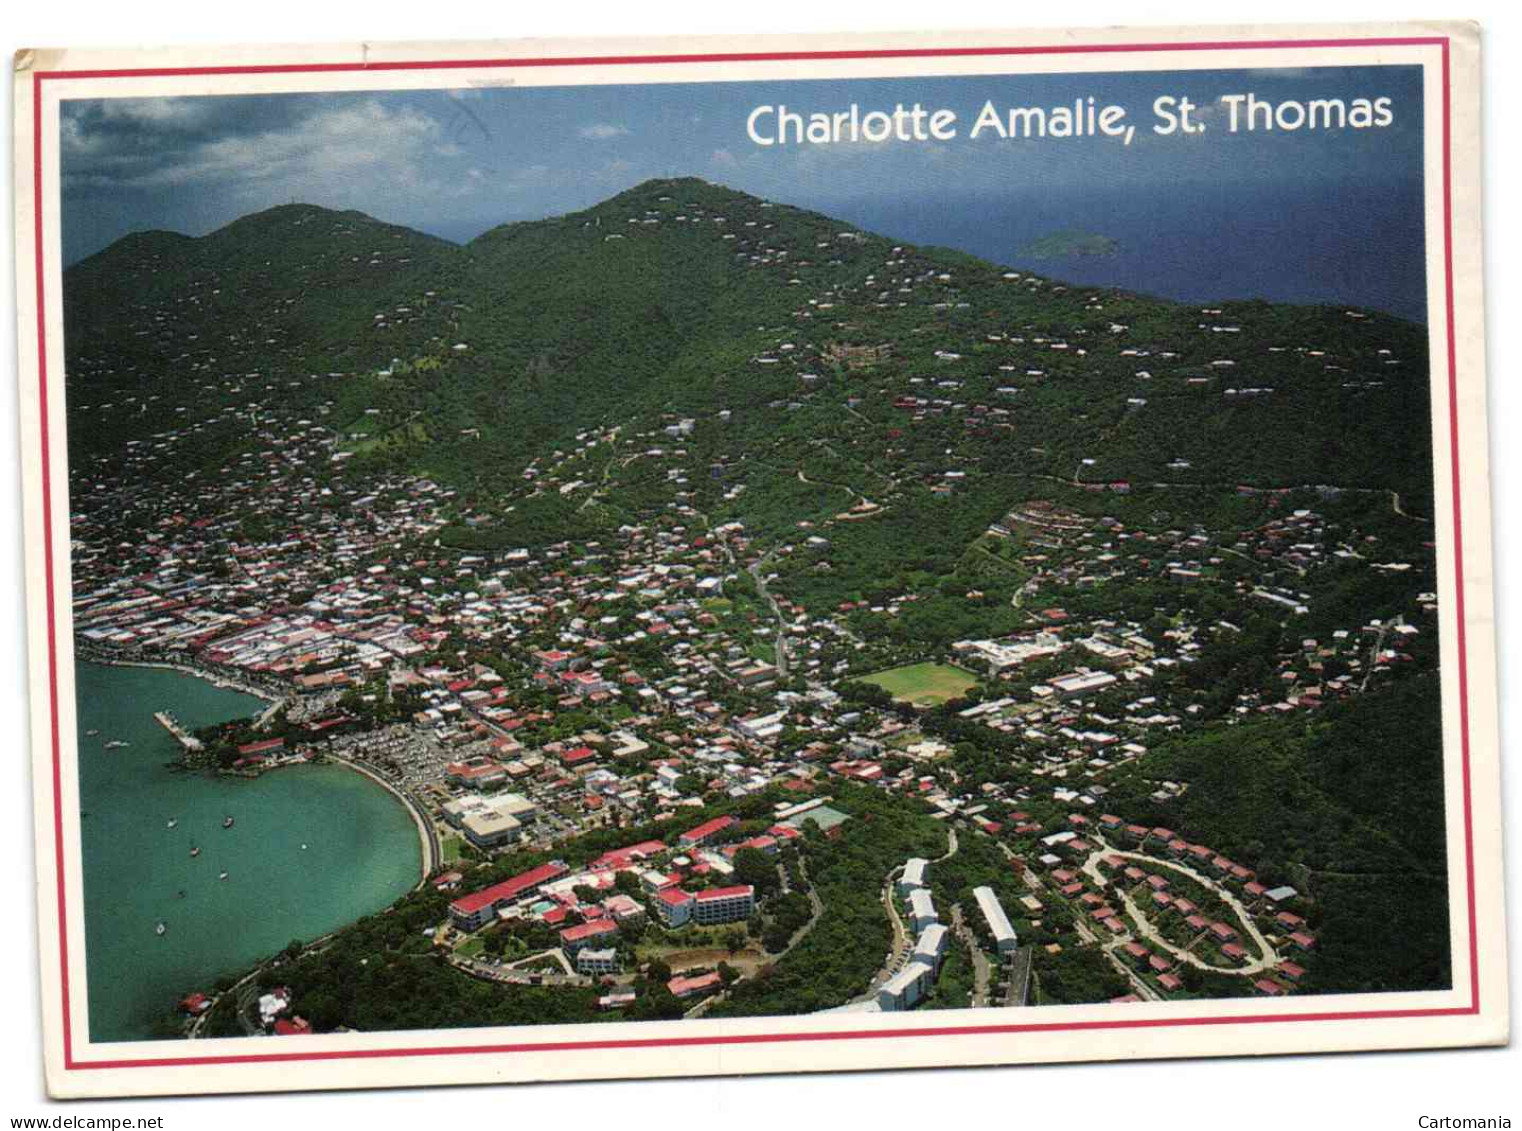 Charlotte Amalie - St. Thomas - Jungferninseln, Amerik.